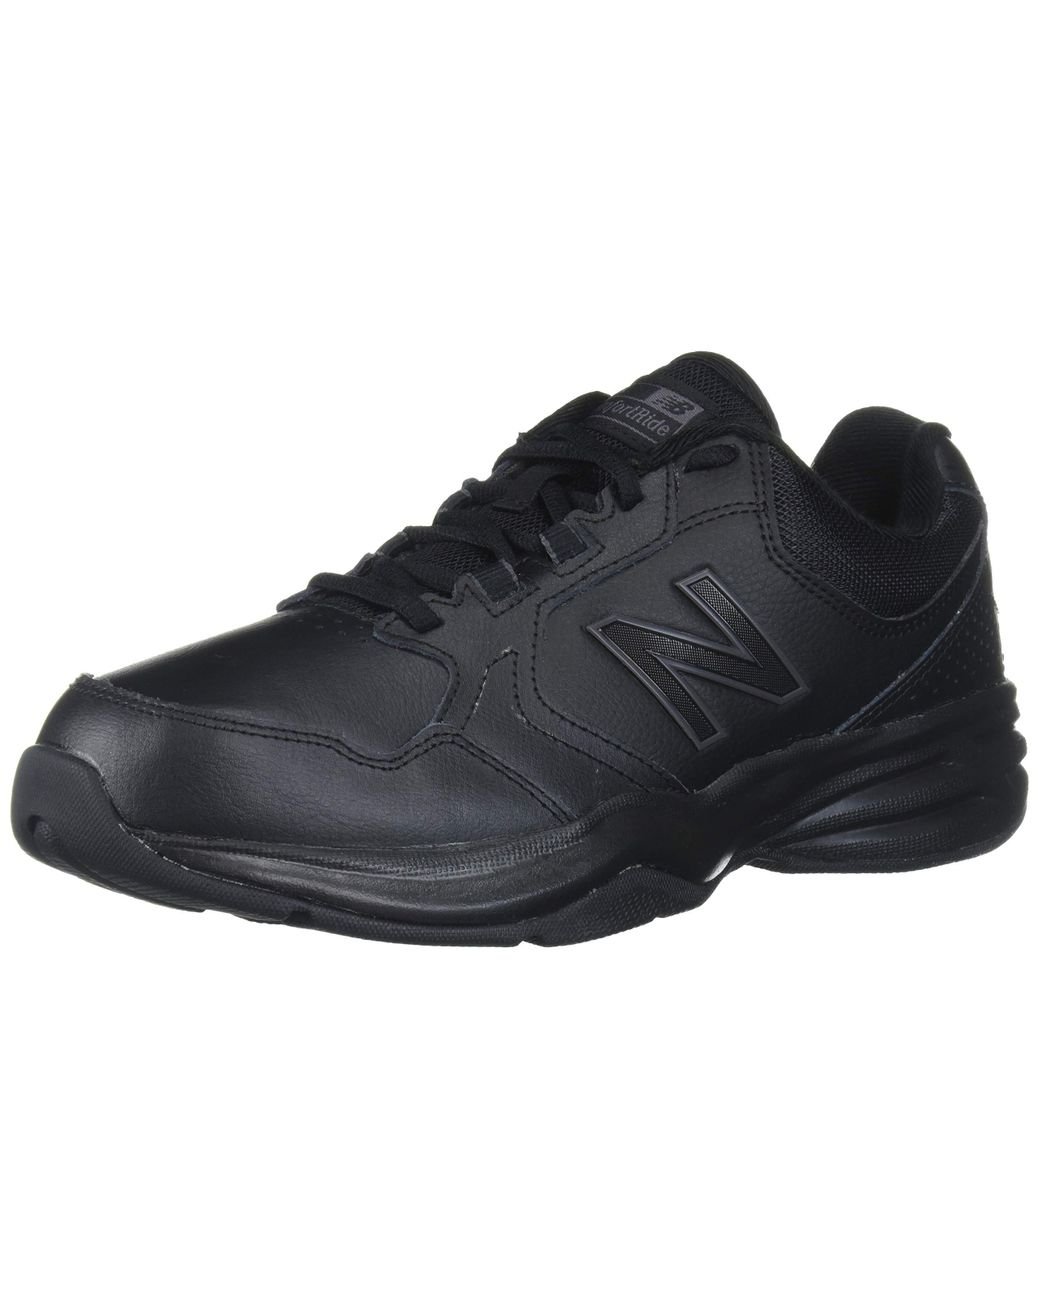 New Balance Leather 411 V1 Walking Shoe in Black/Black (Black) for Men |  Lyst